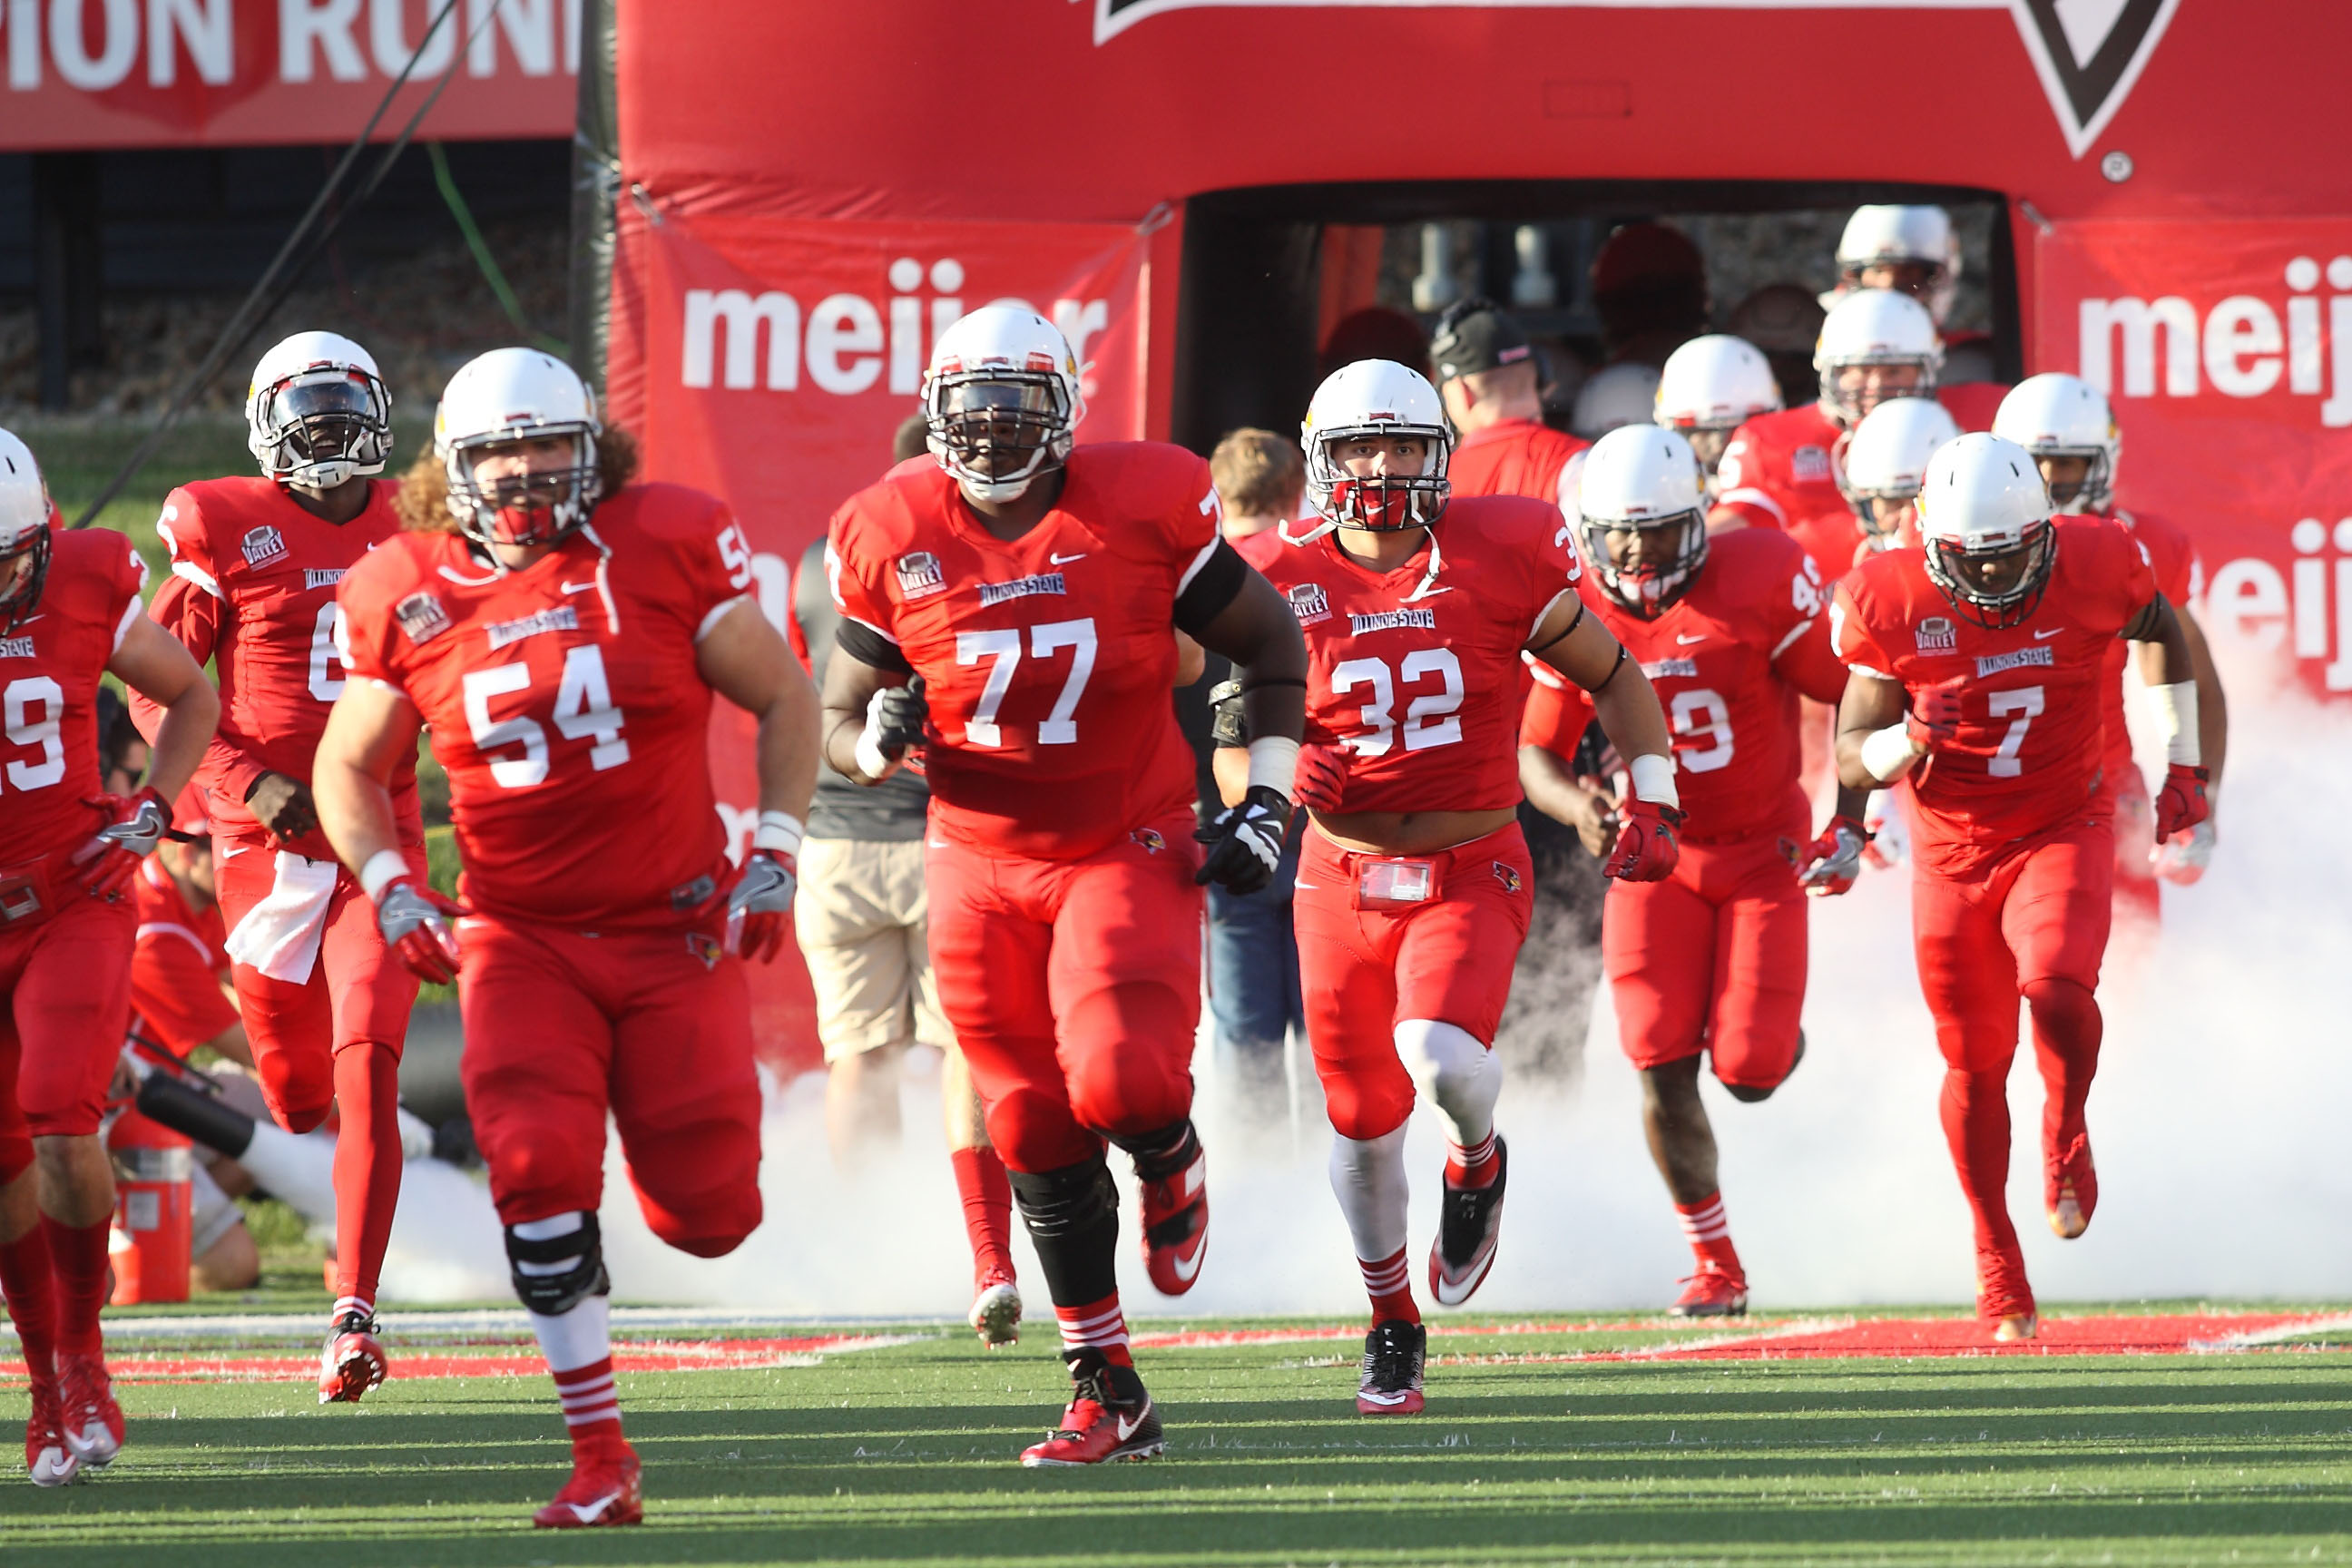 Redbird football players running onto the field